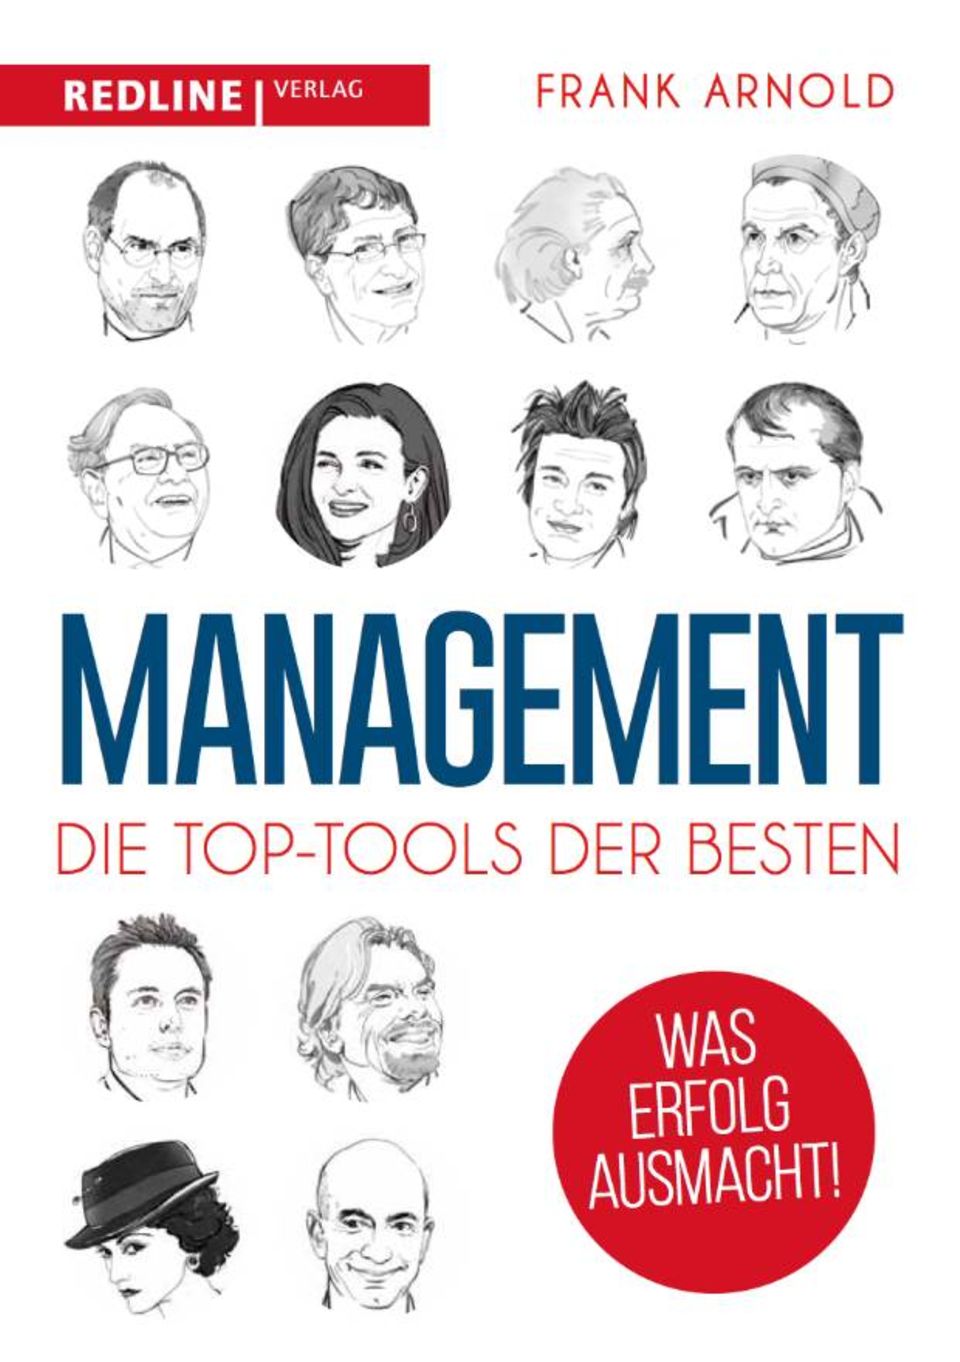 Der Auszug stammt aus dem Buch "Management - die Top-Tools der Besten"